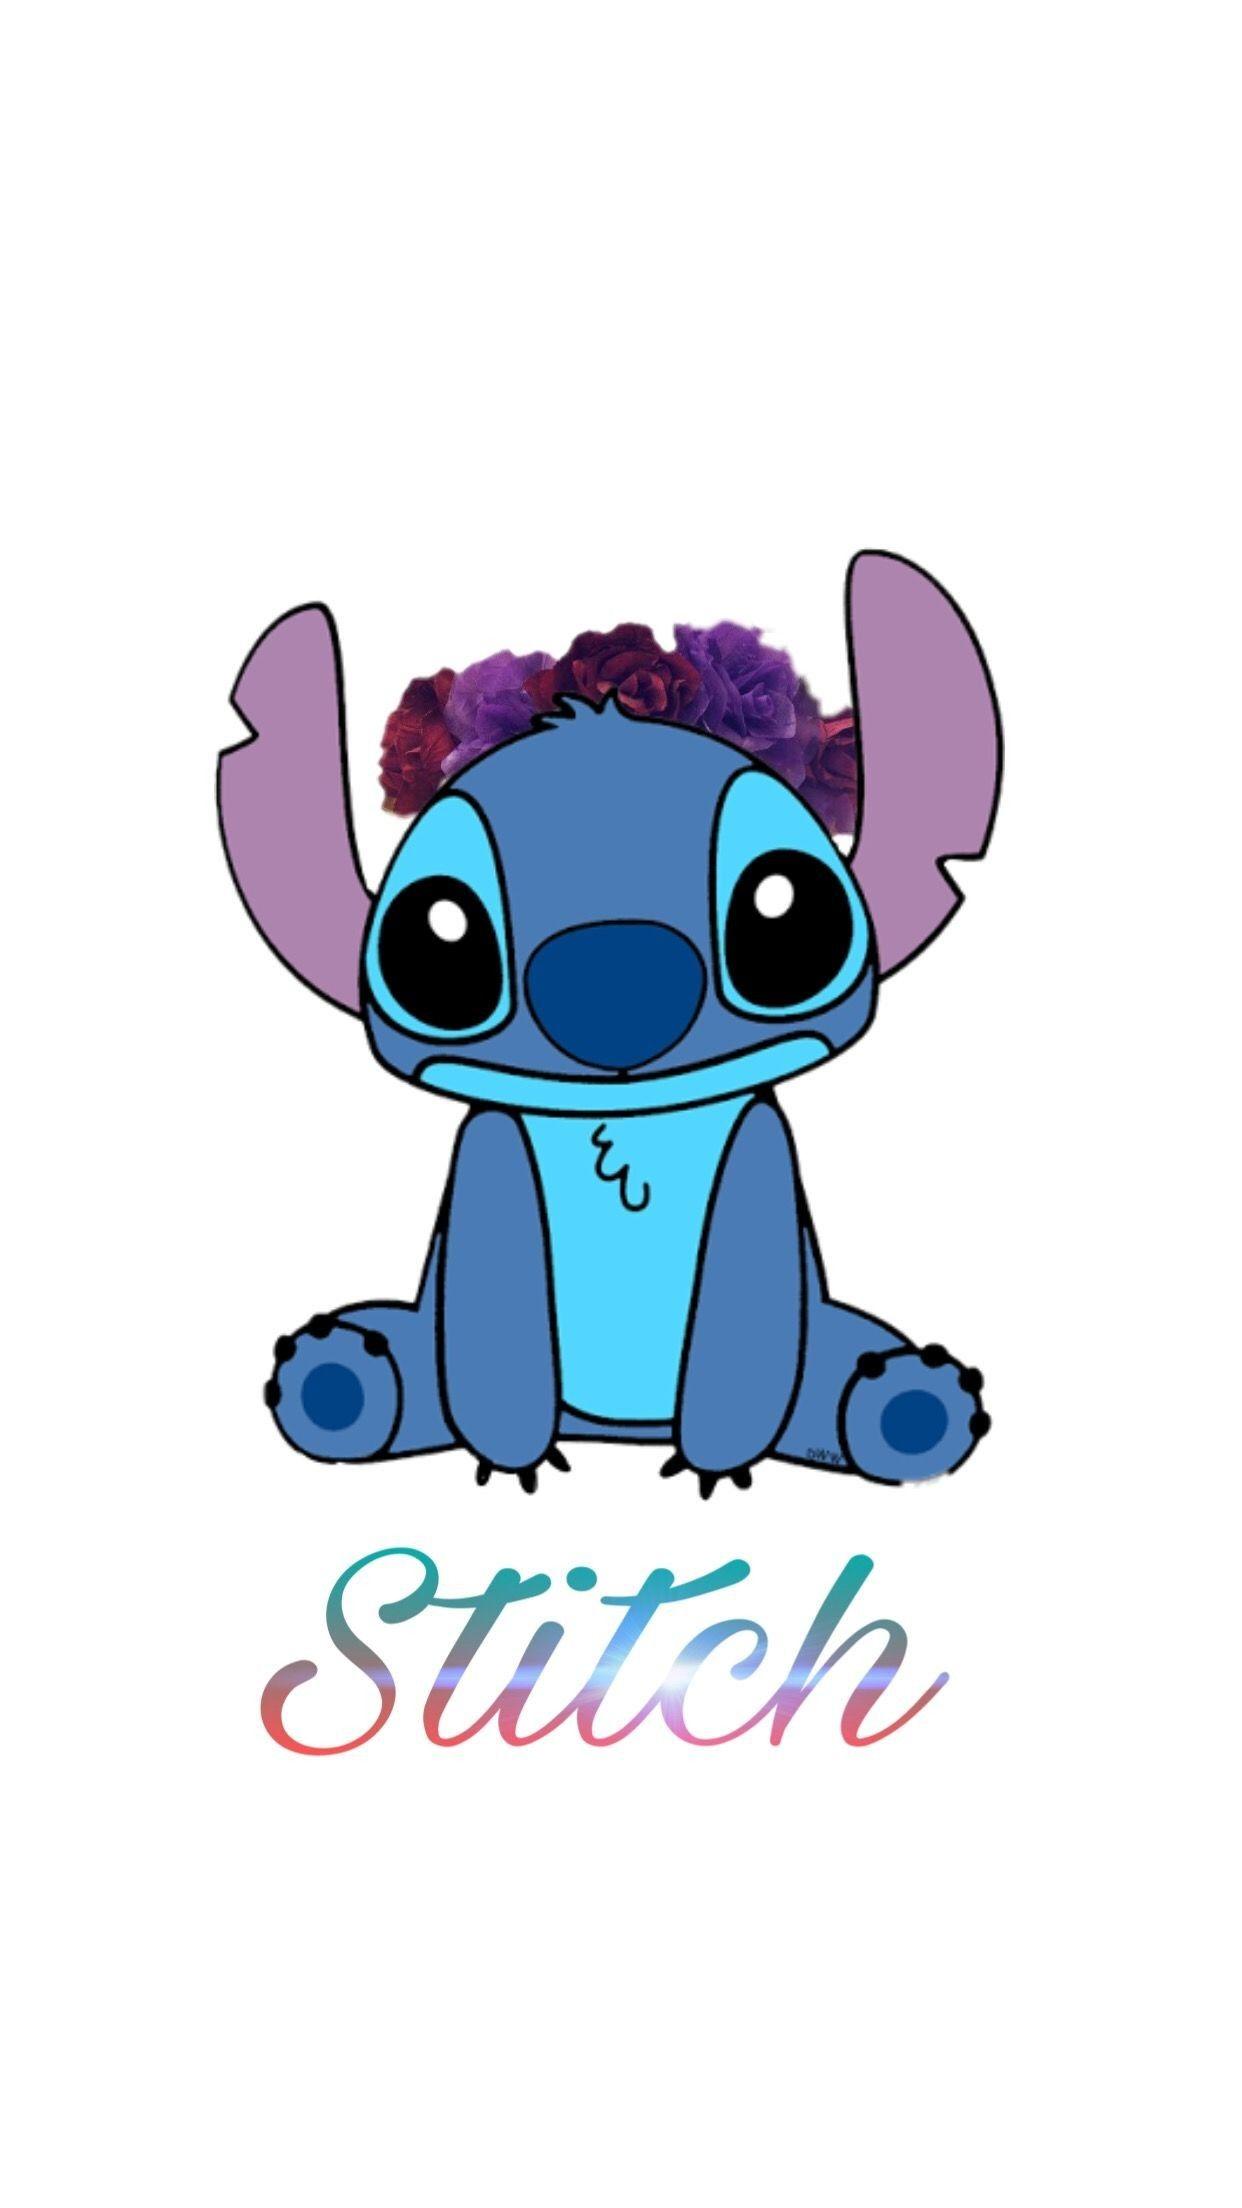  Cute  Stitch  iPhone Wallpapers  Top Free Cute  Stitch  